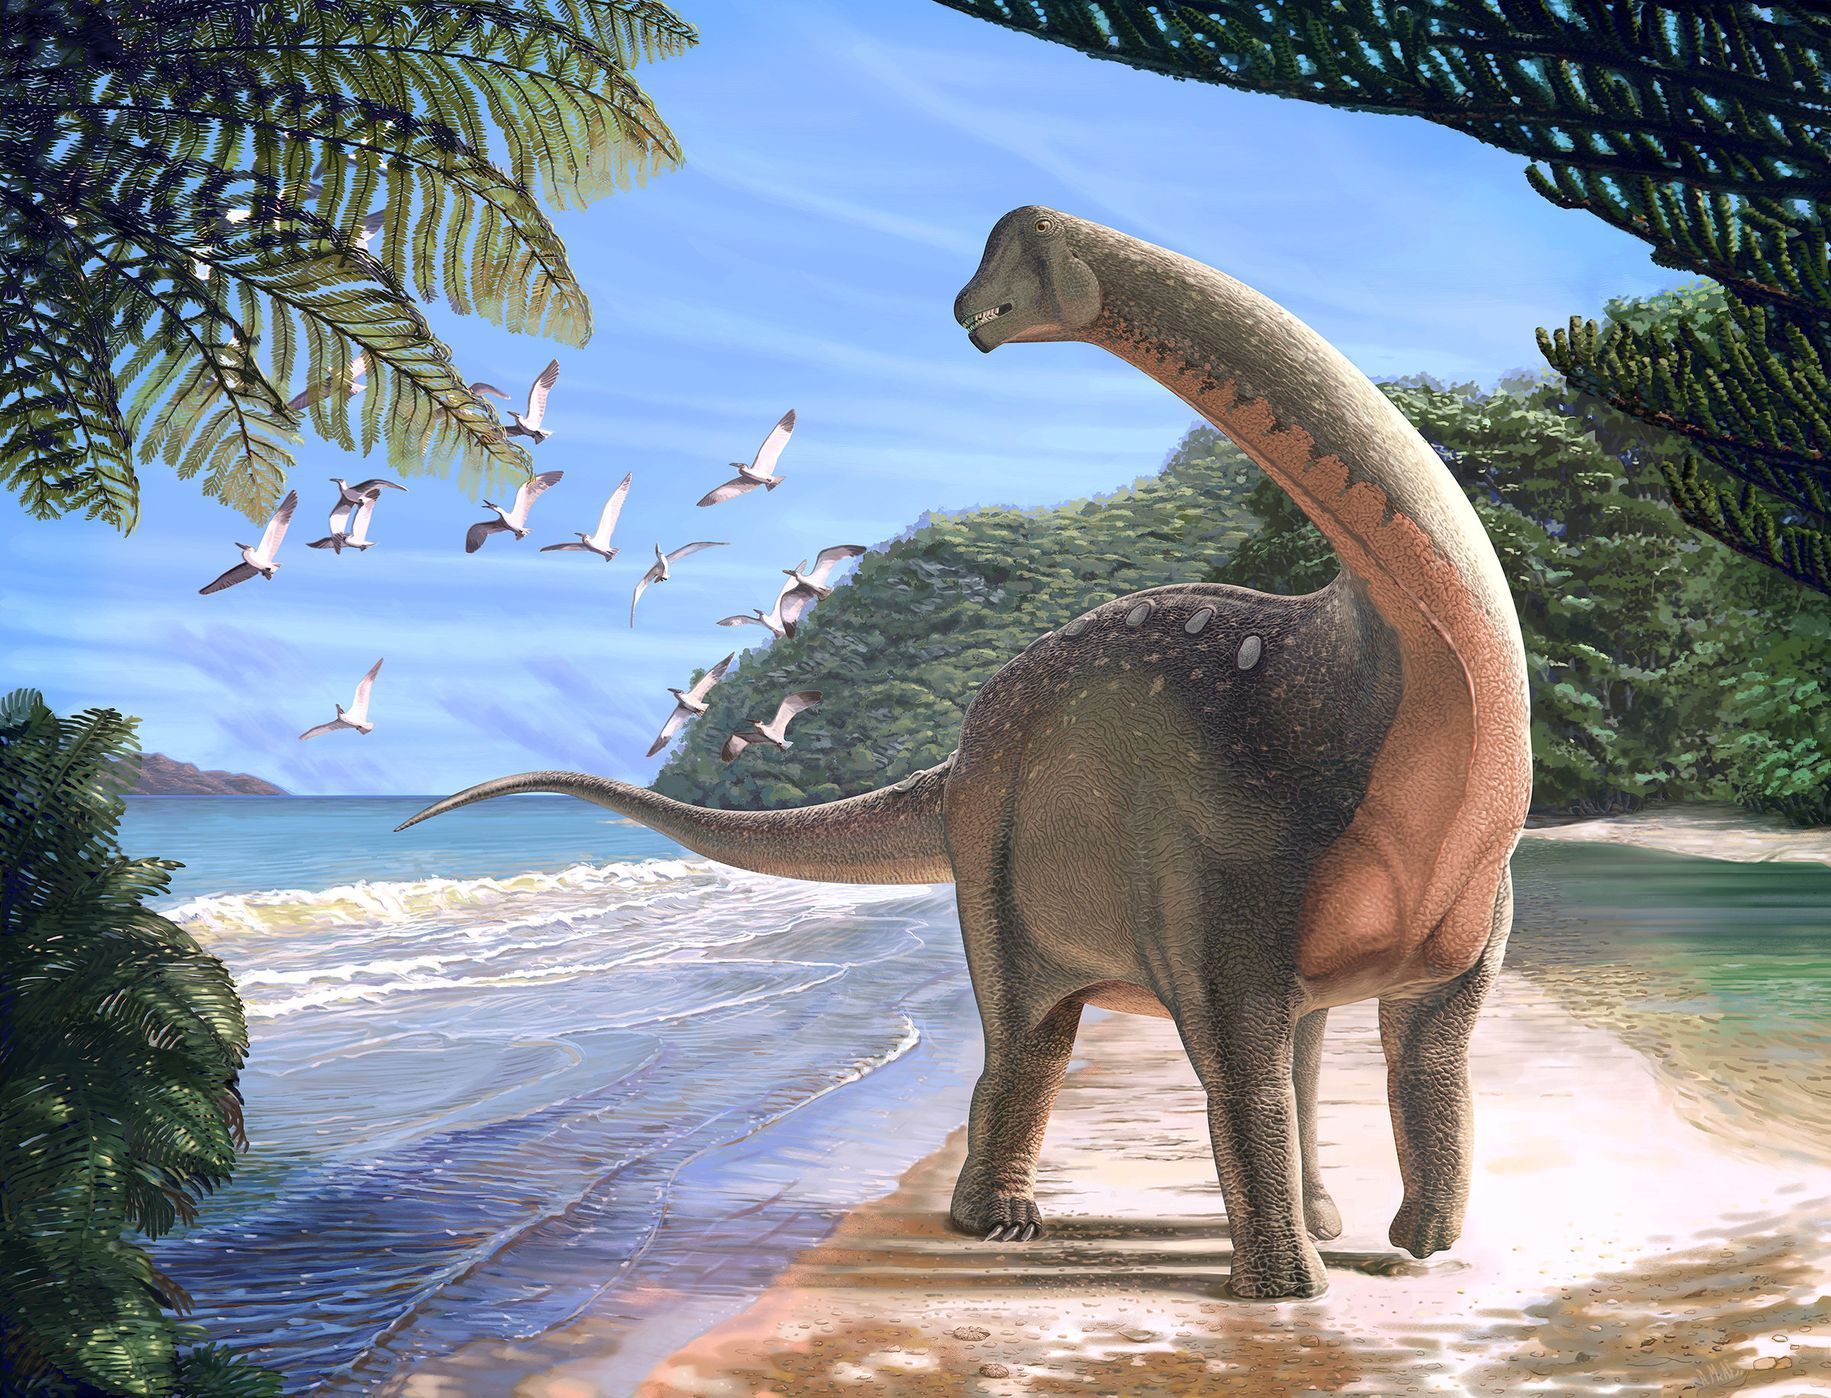 Mansourasaurus - nově objevený druh dinosaura